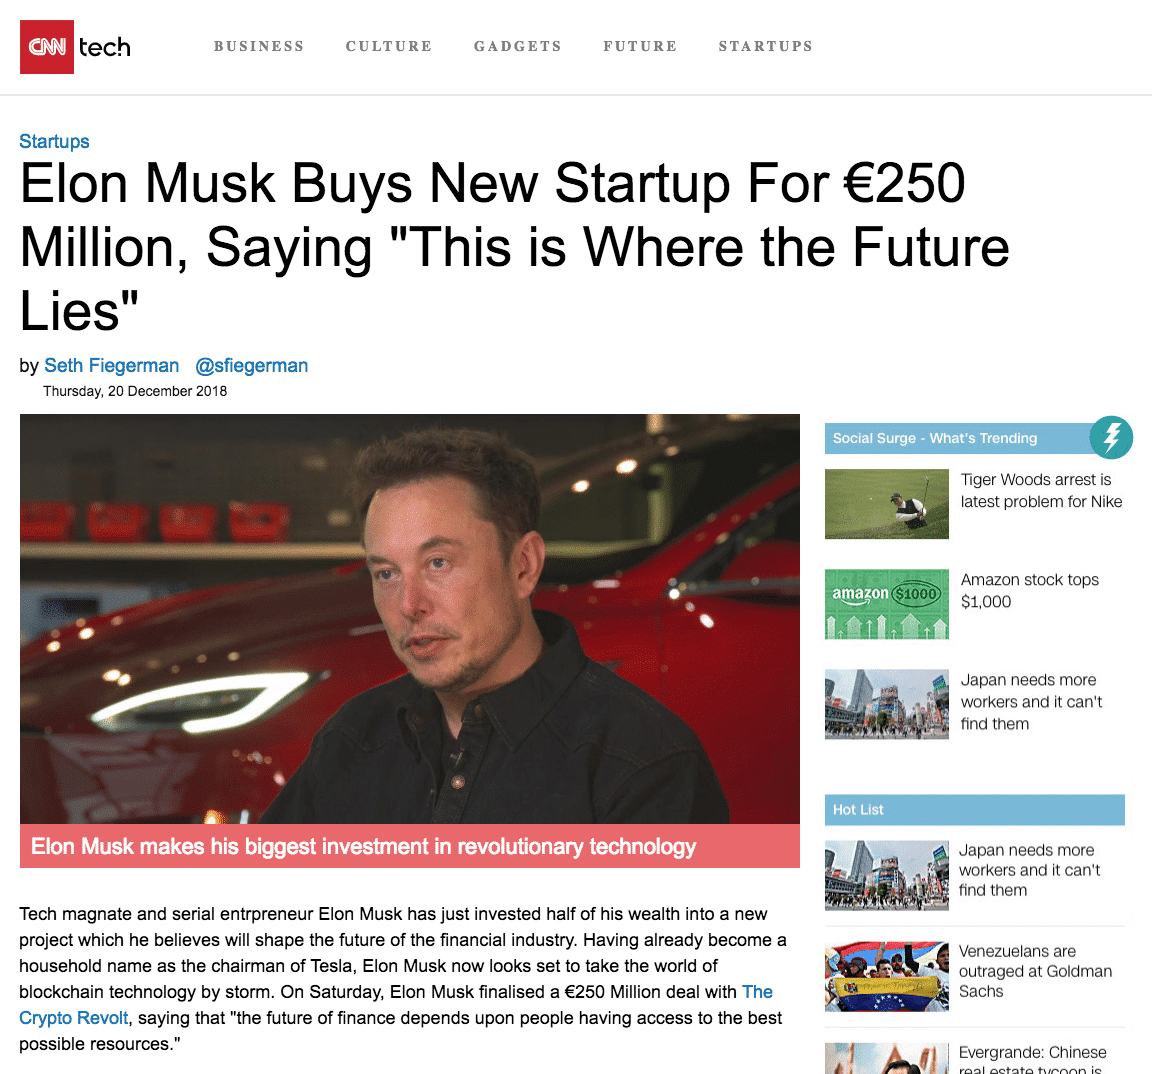 Falsk nyhetsartikel om Elon Musk.